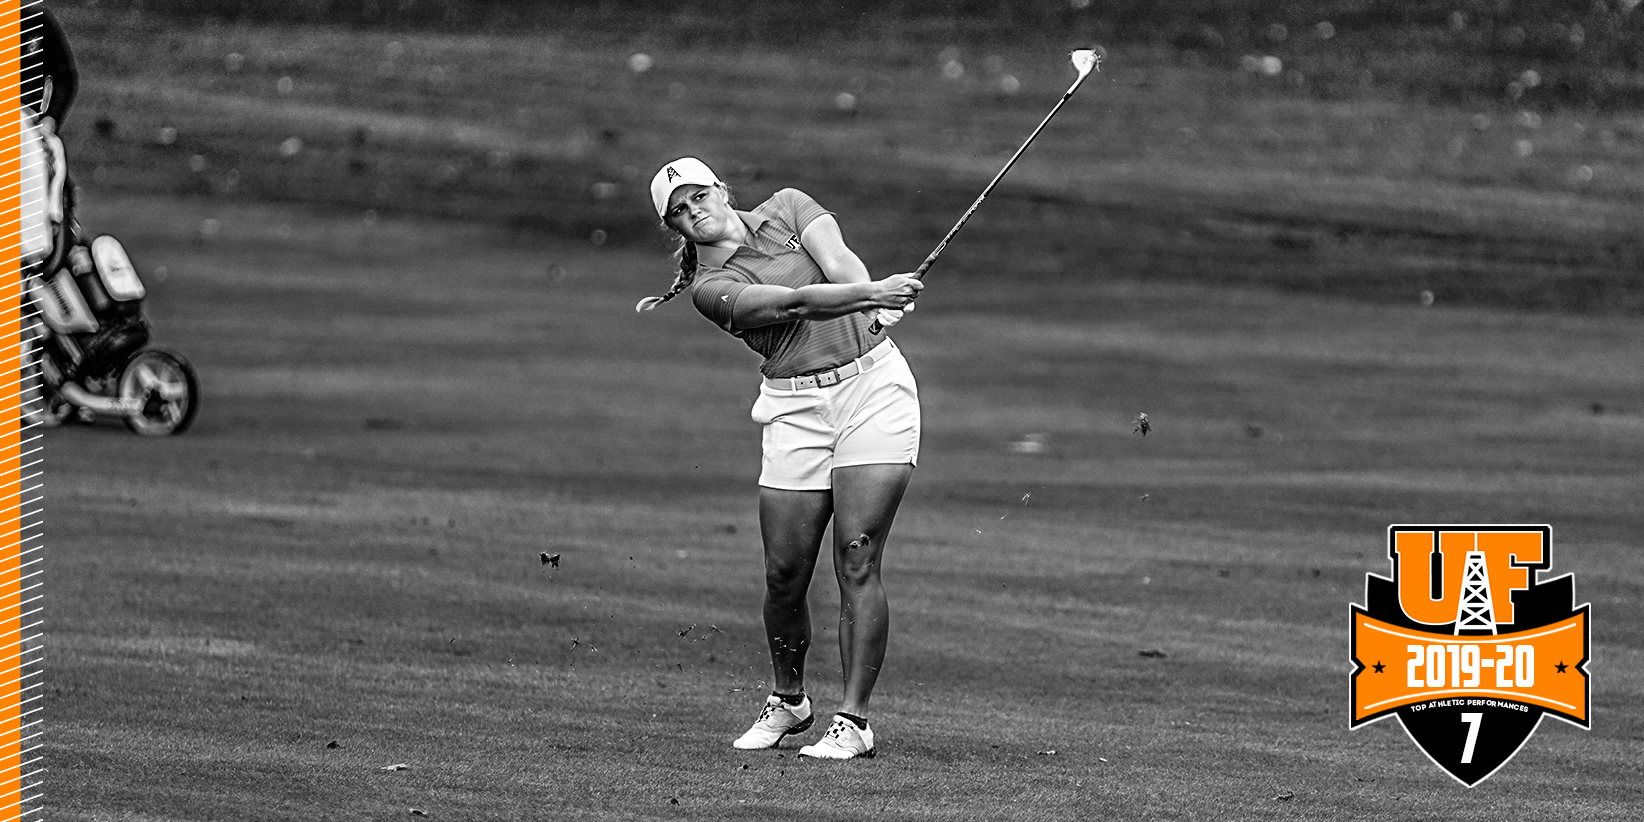 Women's golfer hitting an approach shot